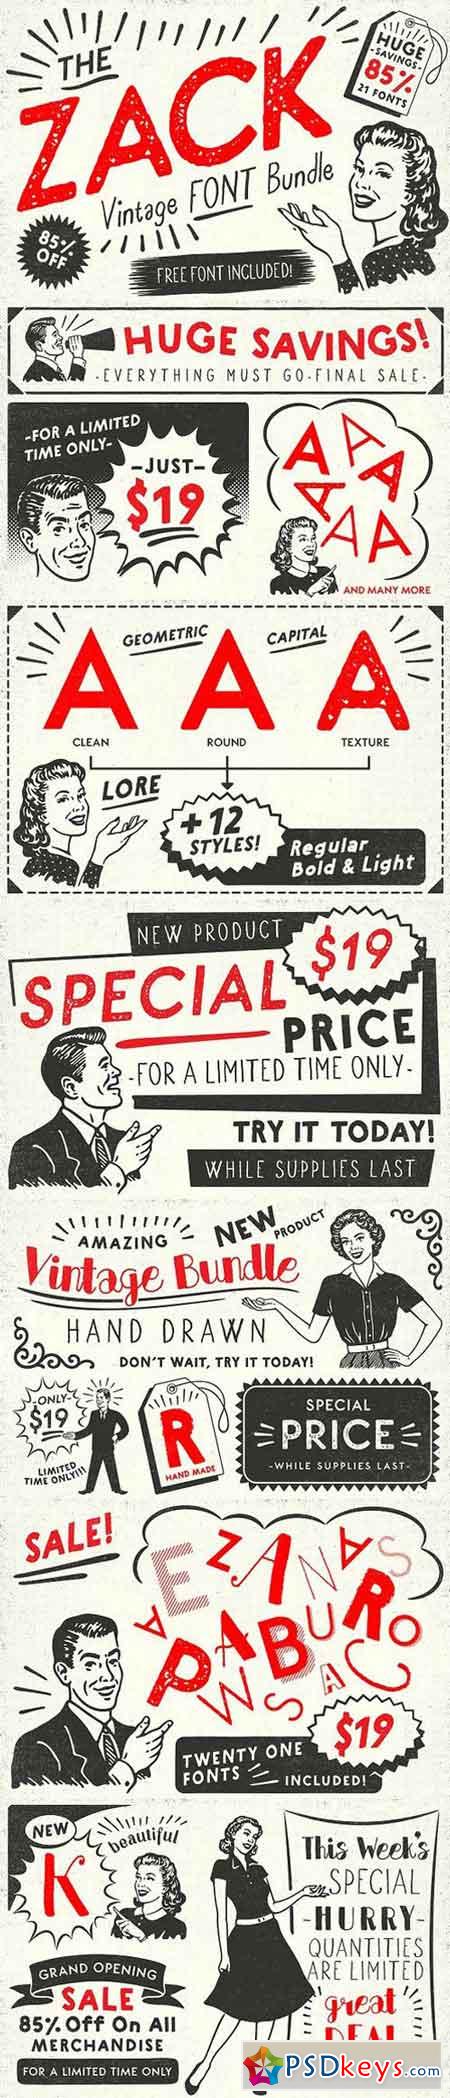 ZACK Vintage Font Bundle 1449151